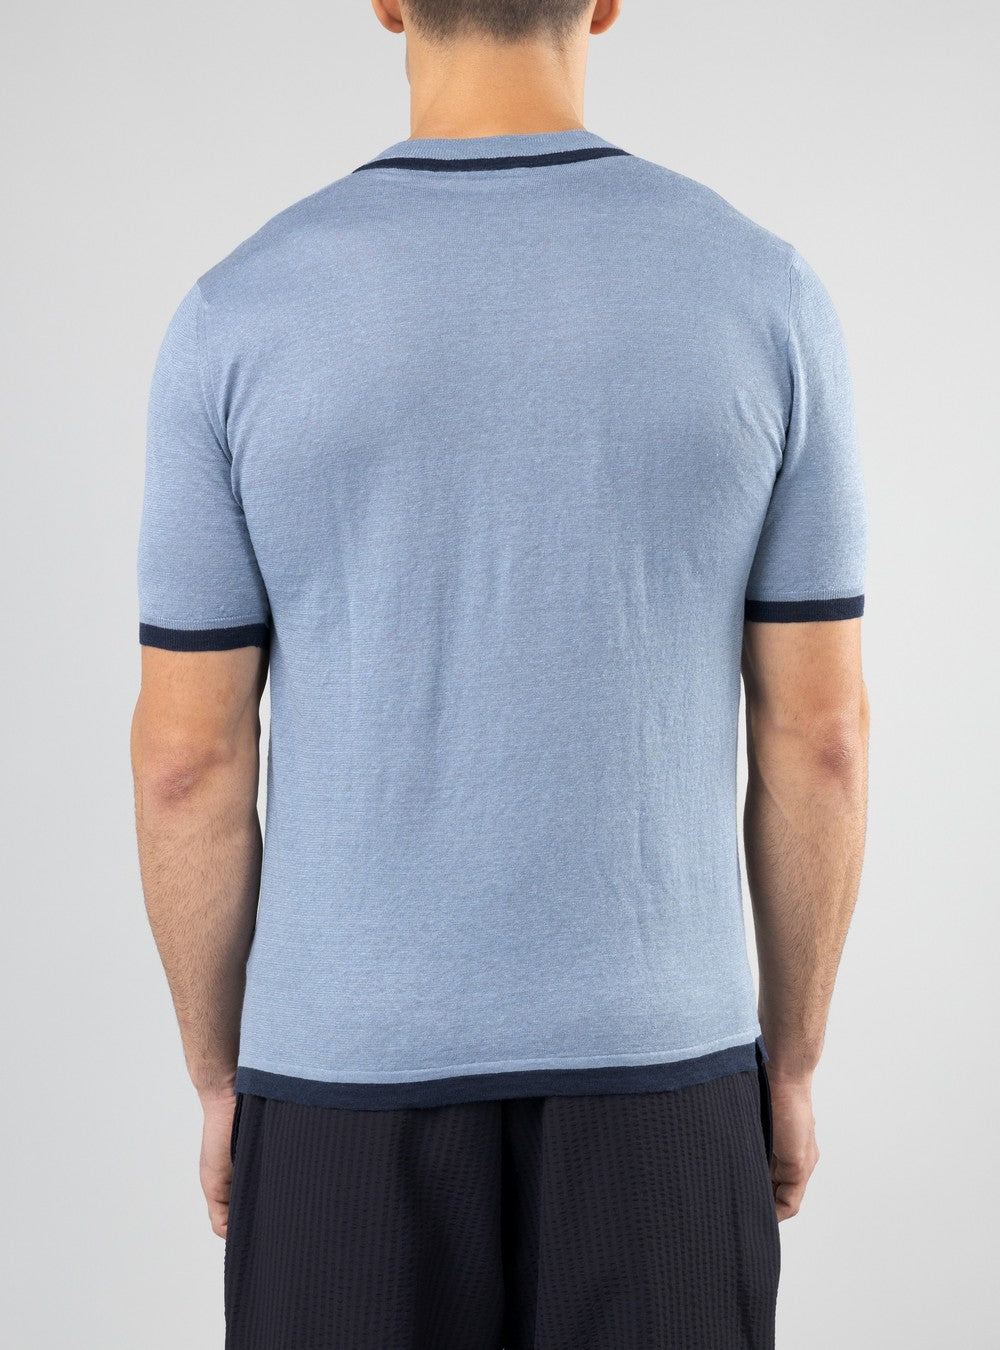 Proteus Lightweight T-Shirt in Cashmere/Linen/Silk, Airforce Blue